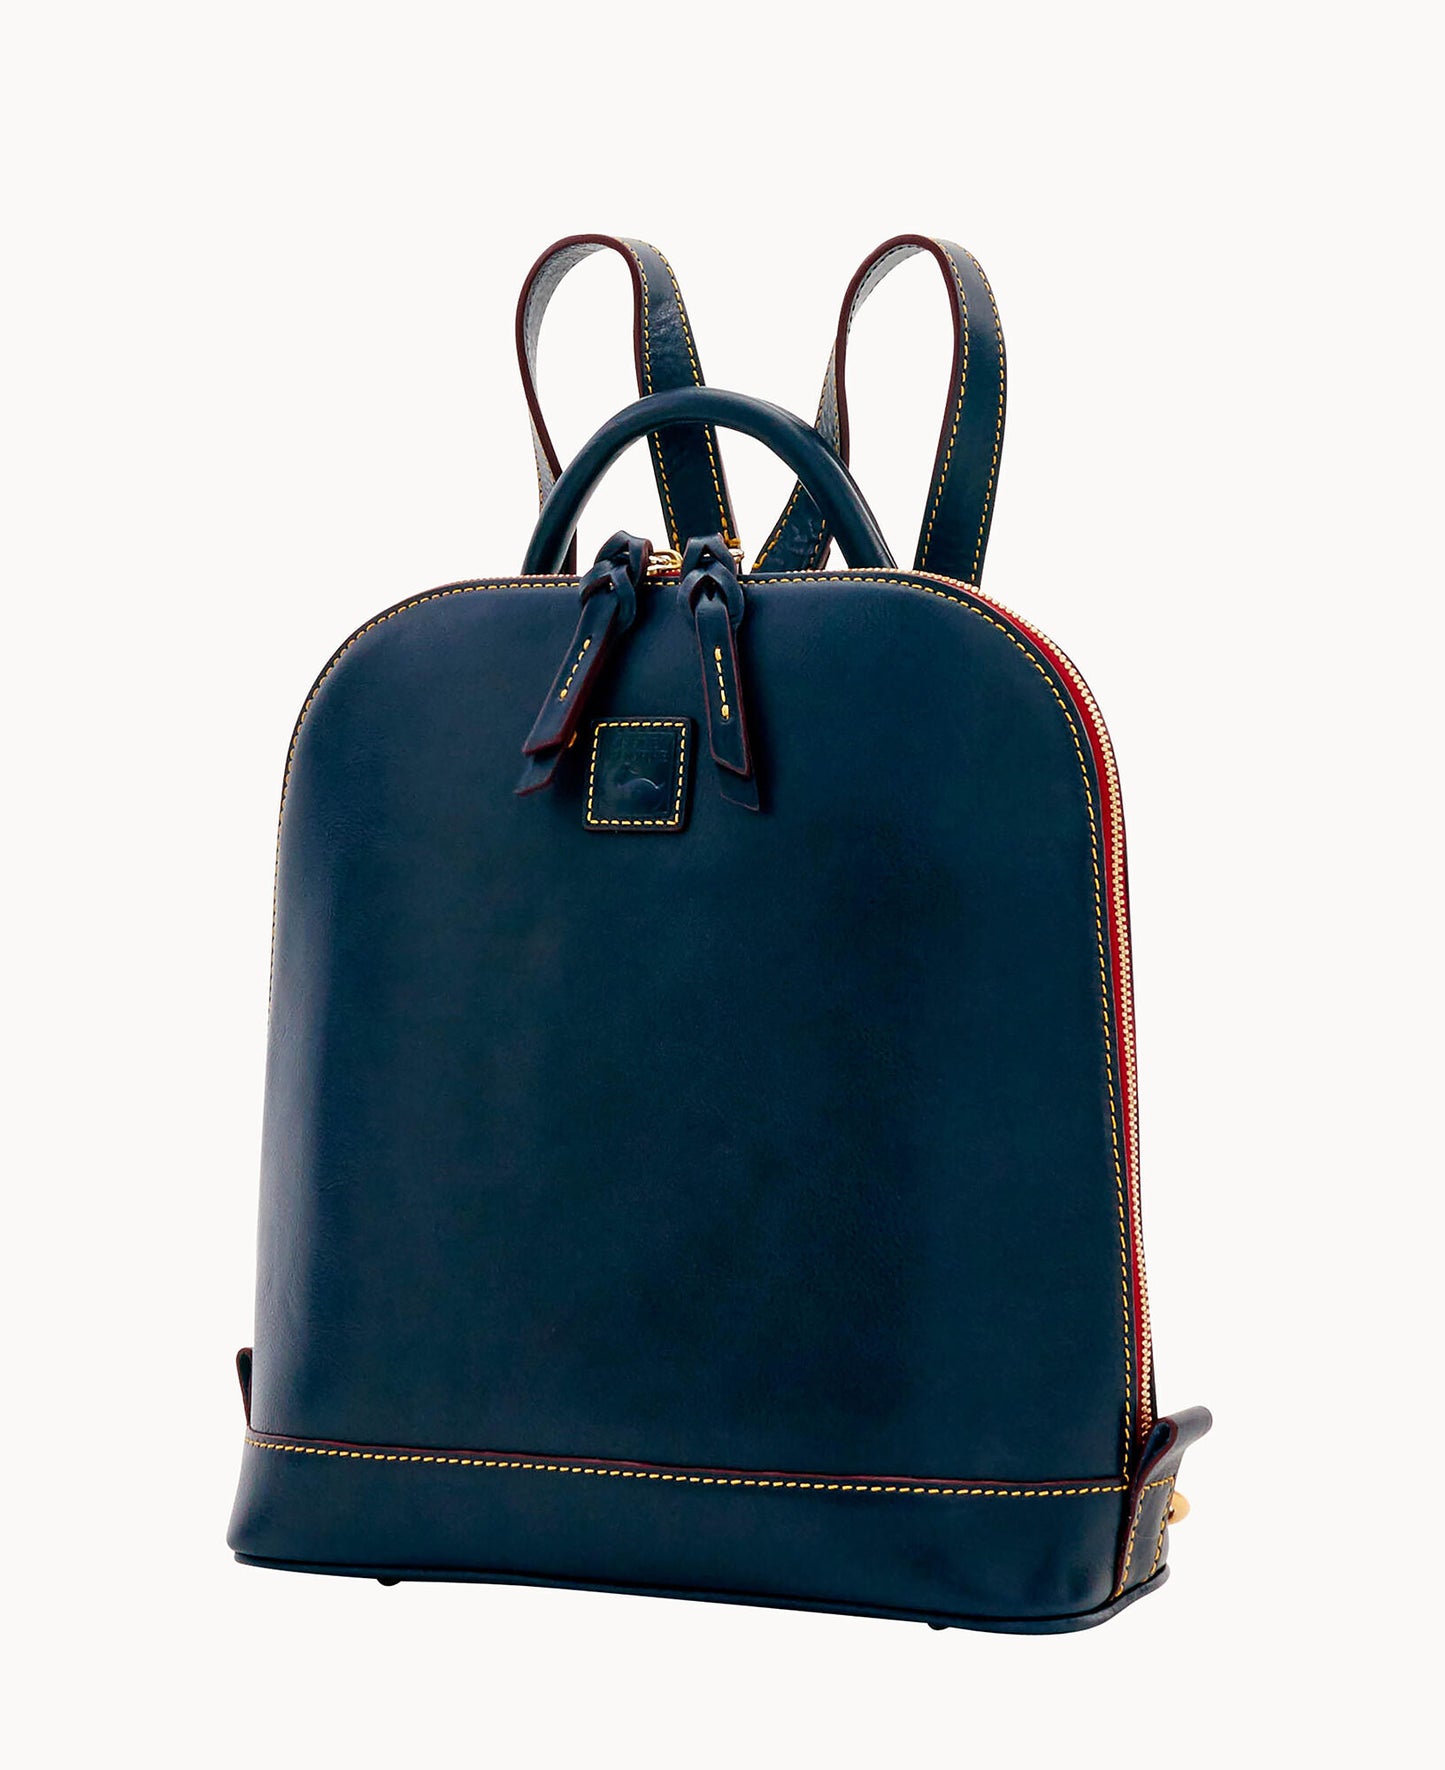 41. Authentic Dooney & Bourke Zip Pod Backpack with Wallet- $175